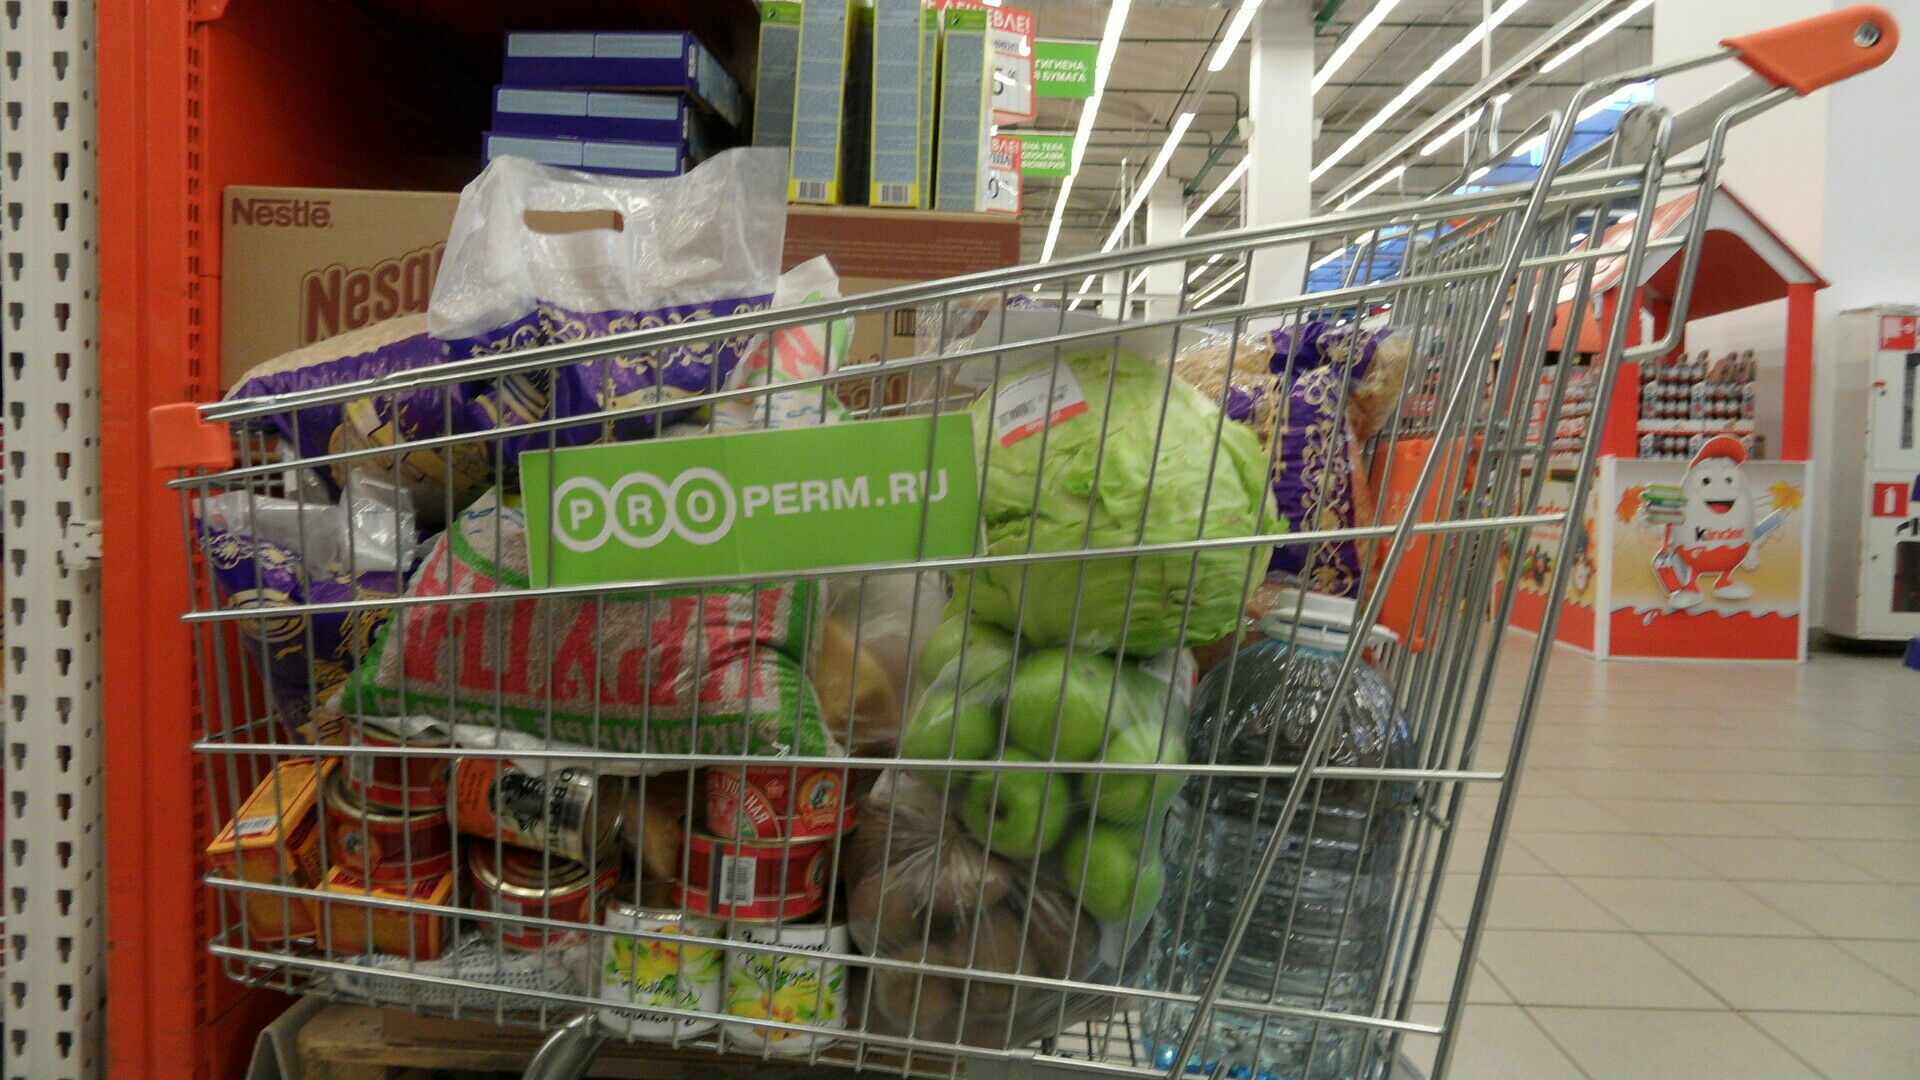 Цены на продукты растут. Житель Прикамья тратит на еду 3,9 тысячи рублей в месяц